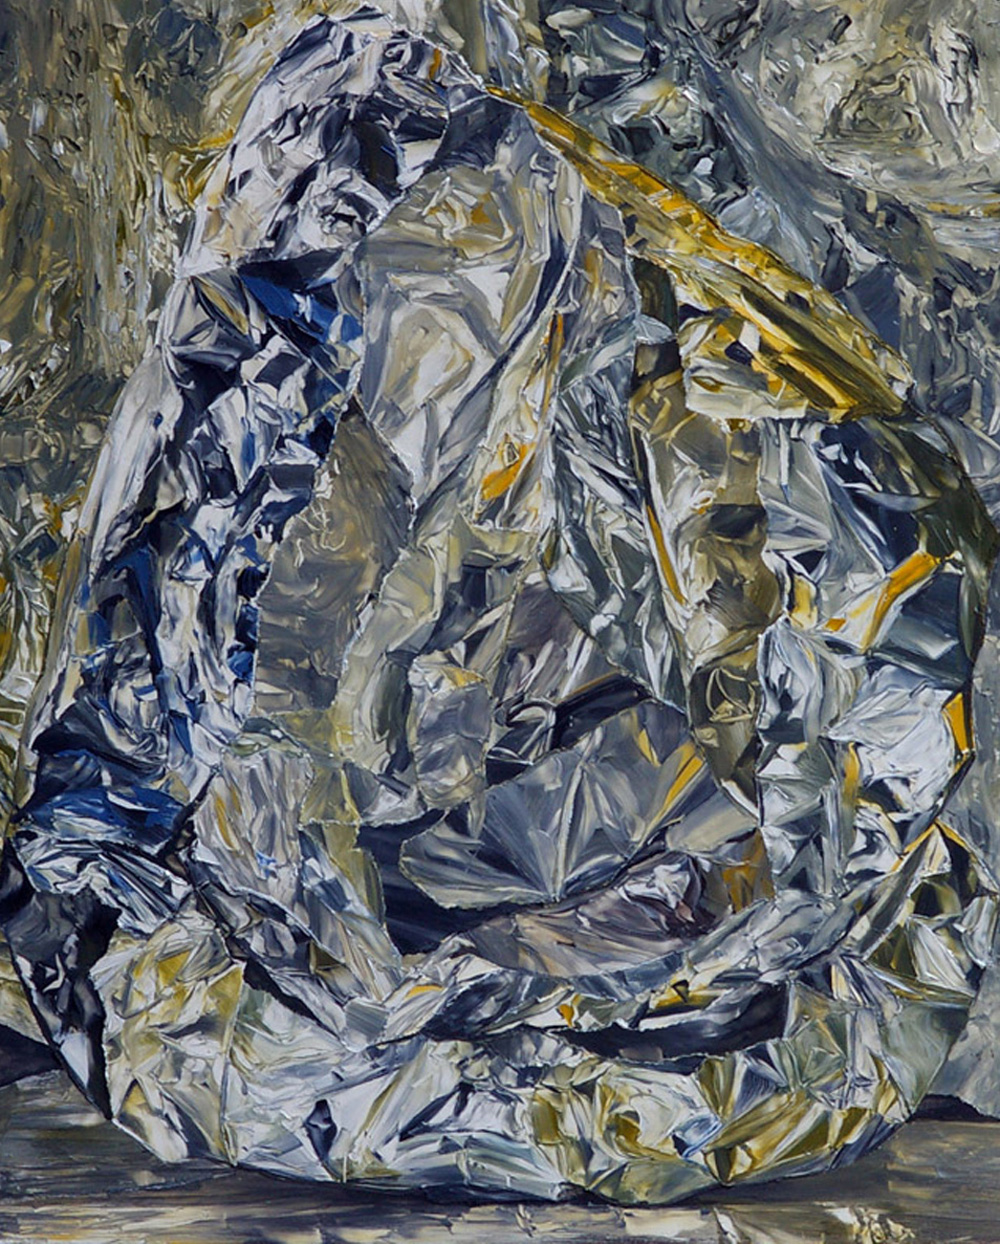 Untitled, 2010
oil on board
32 x 26.2 cms
12 5/8 x 10 3/8 ins. William Daniels